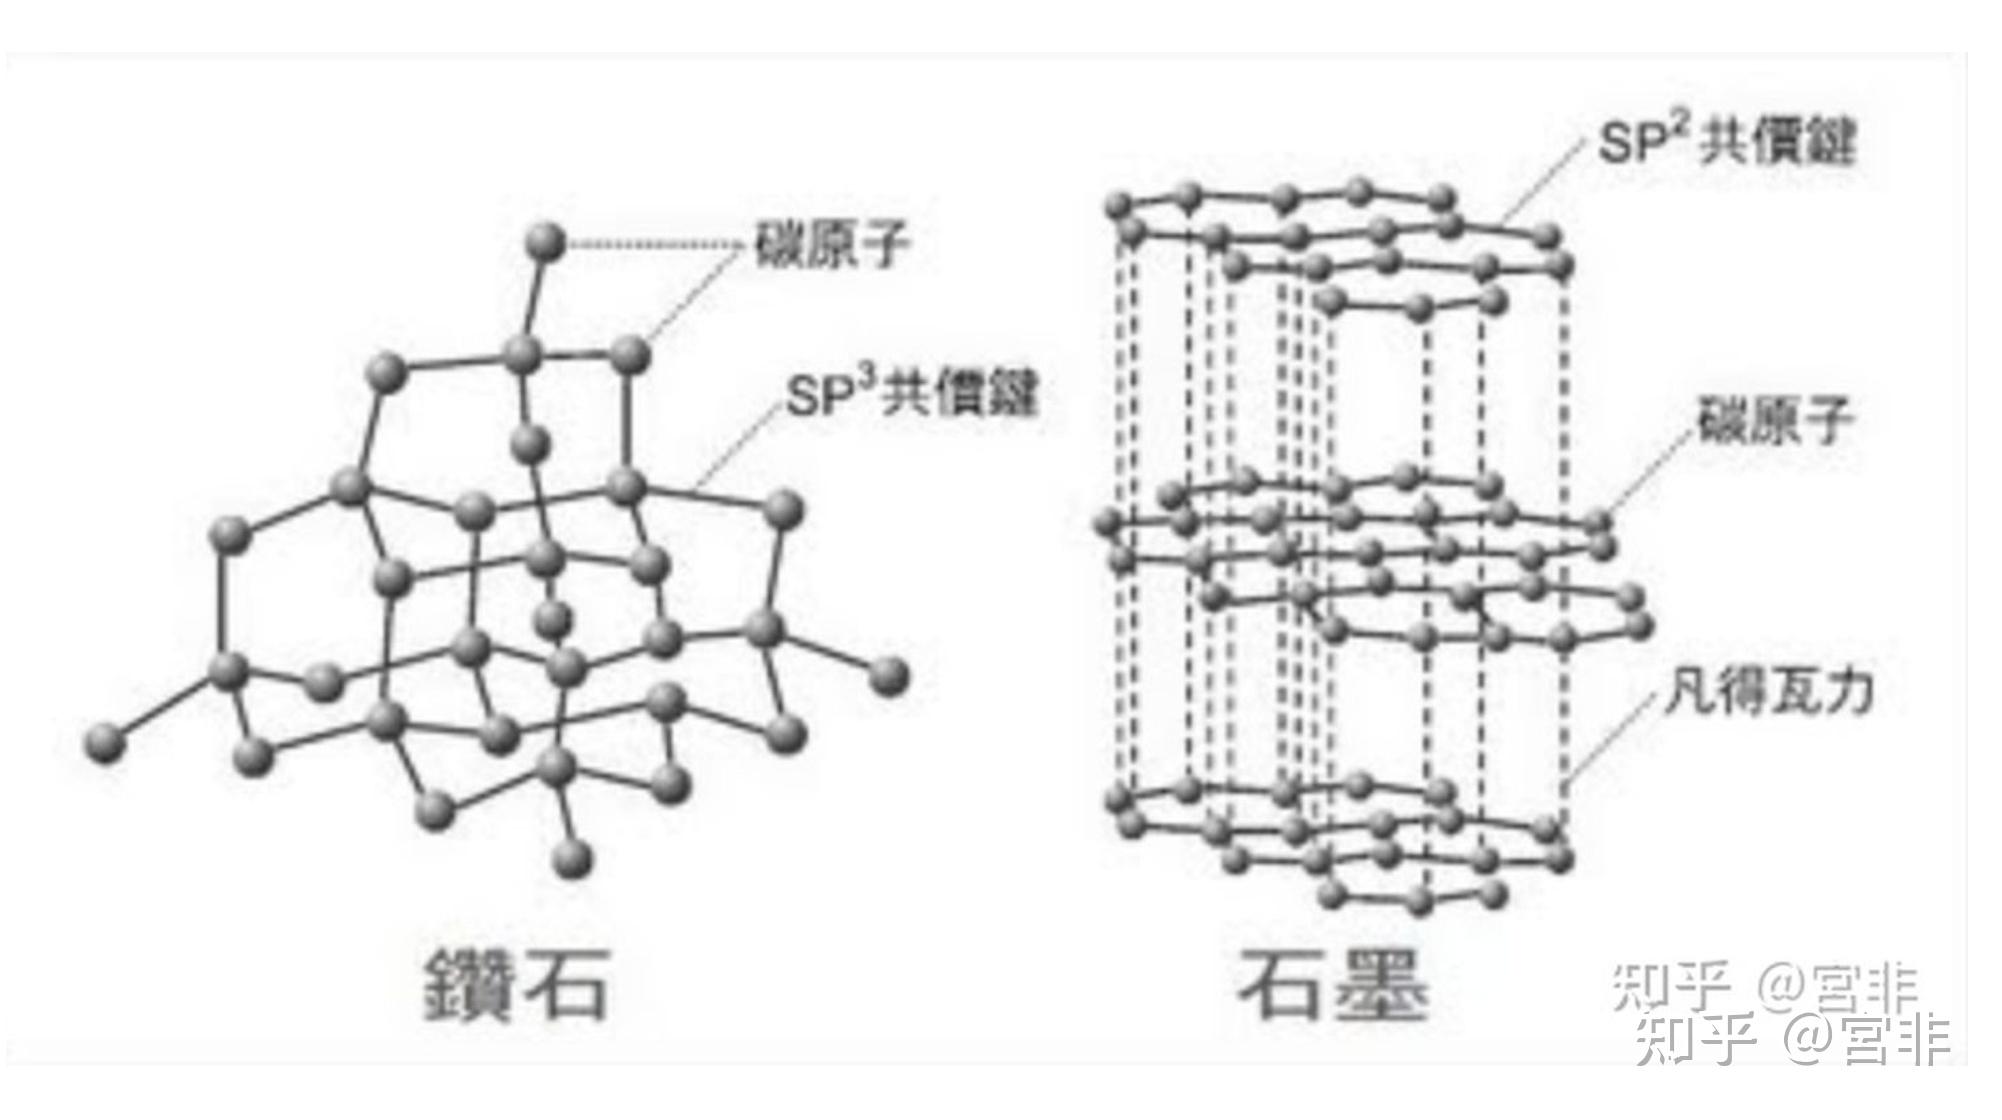 聚合物/石墨烯复合材料制备与性能研究进展